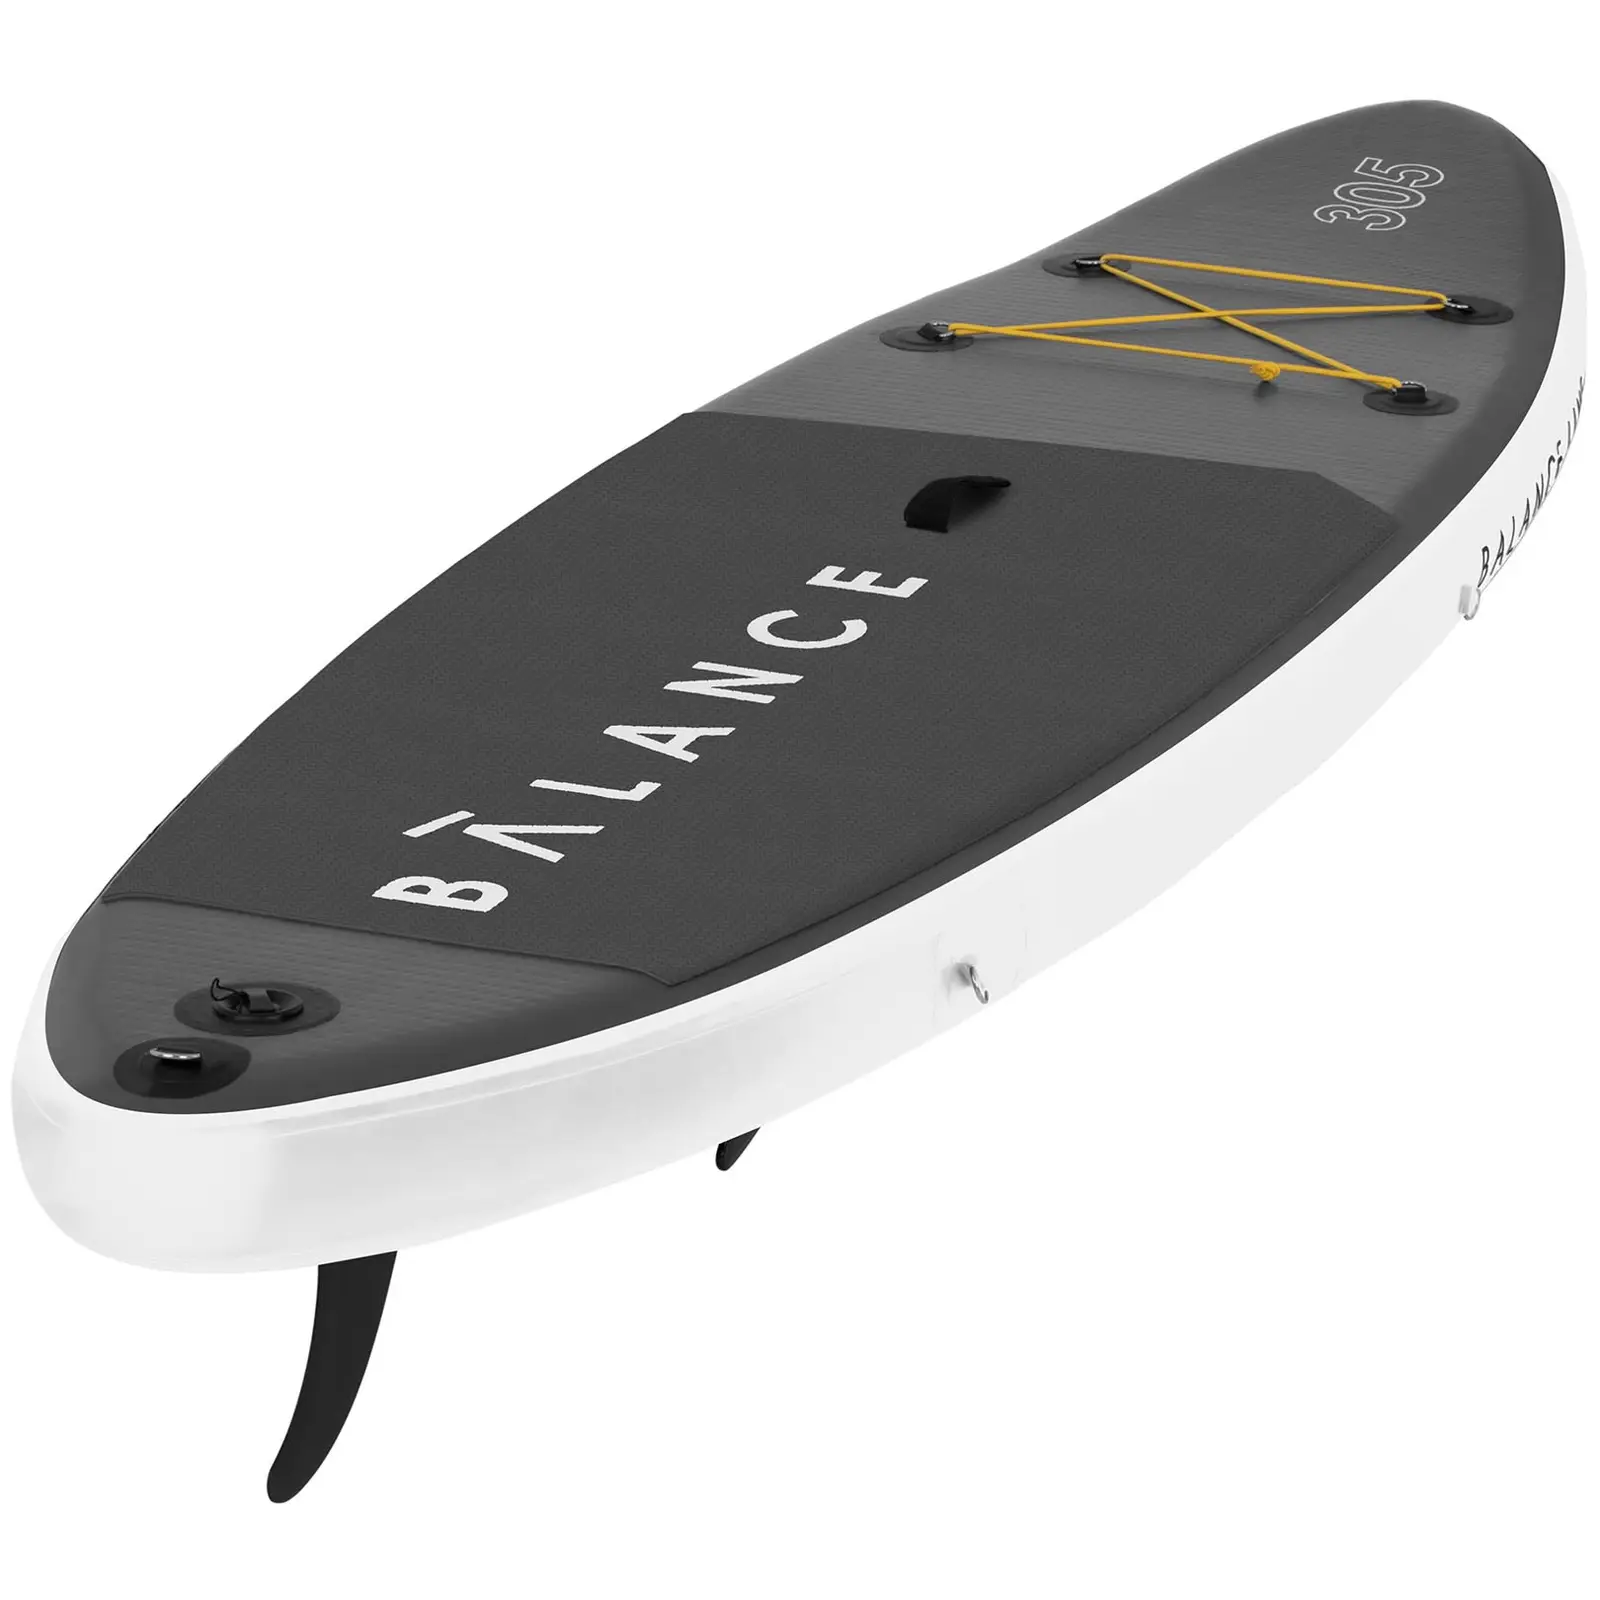 Paddle-board - 135 kg - 305 x 79 x 15 cm